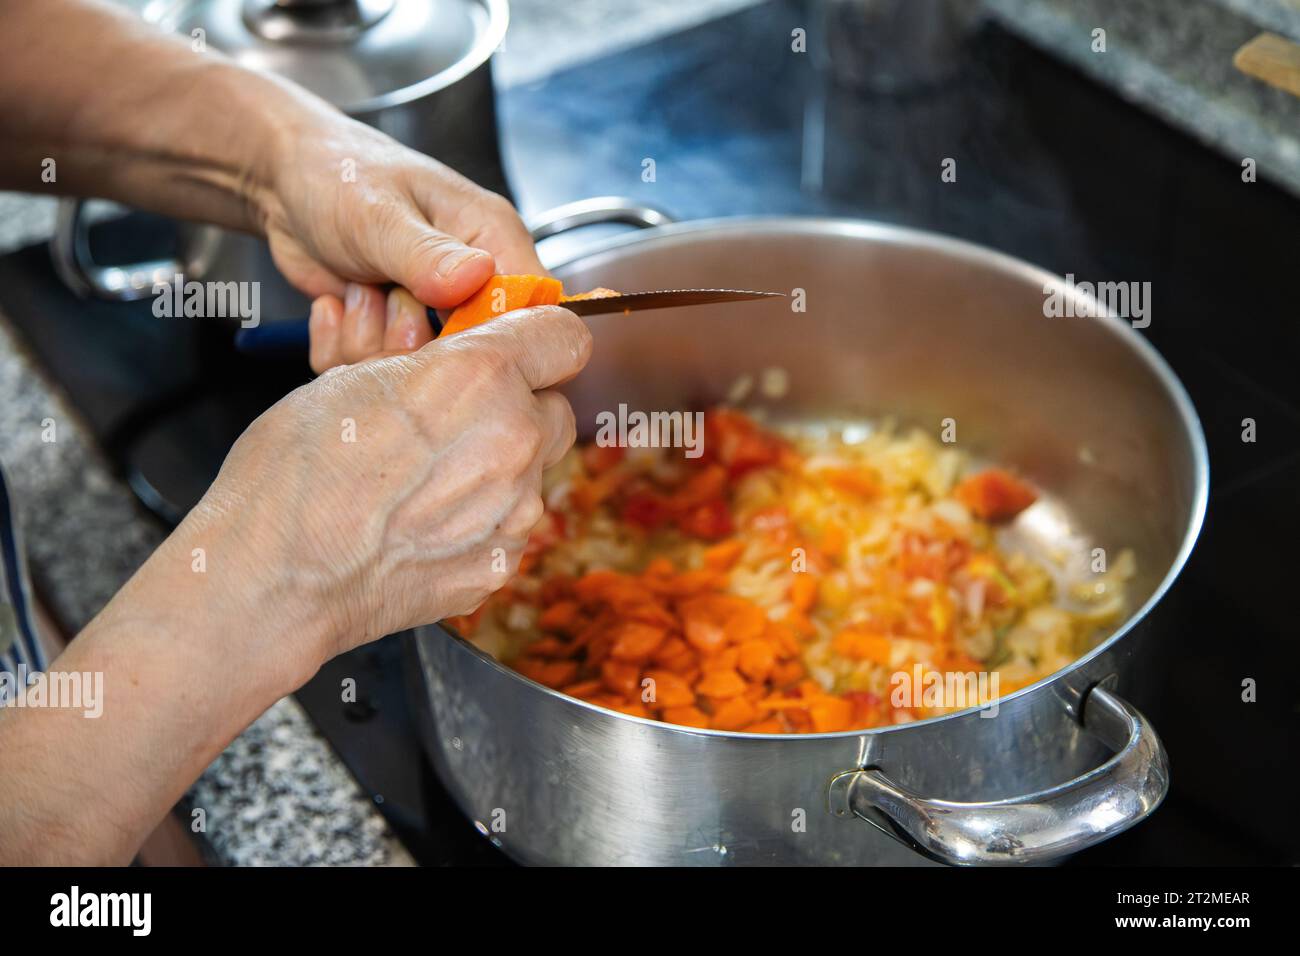 Détail d'une personne cuisinant des aliments sur la table de cuisson électrique avec des casseroles et coupant les aliments pour faire le ragoût. Concept ménage, cuisine à la maison. Banque D'Images